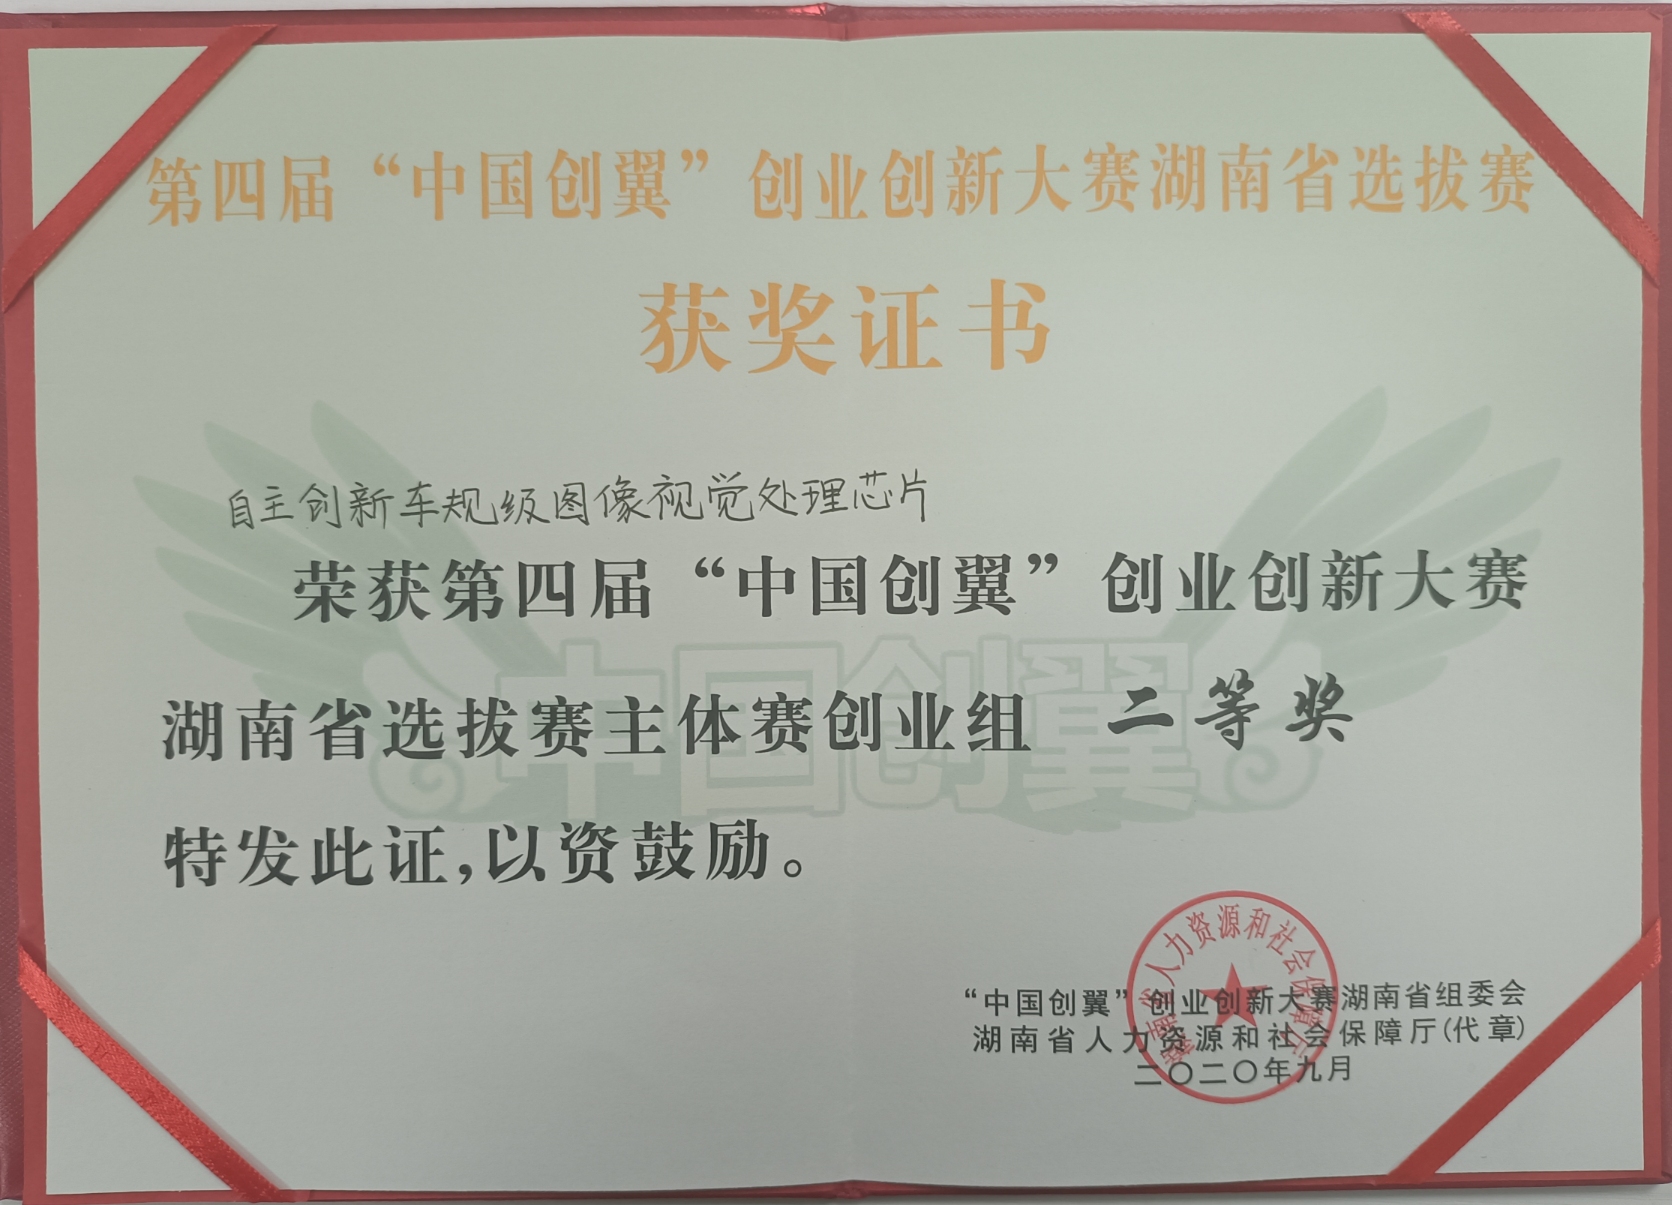   ”中国创翼“创业创新湖南省赛二等奖